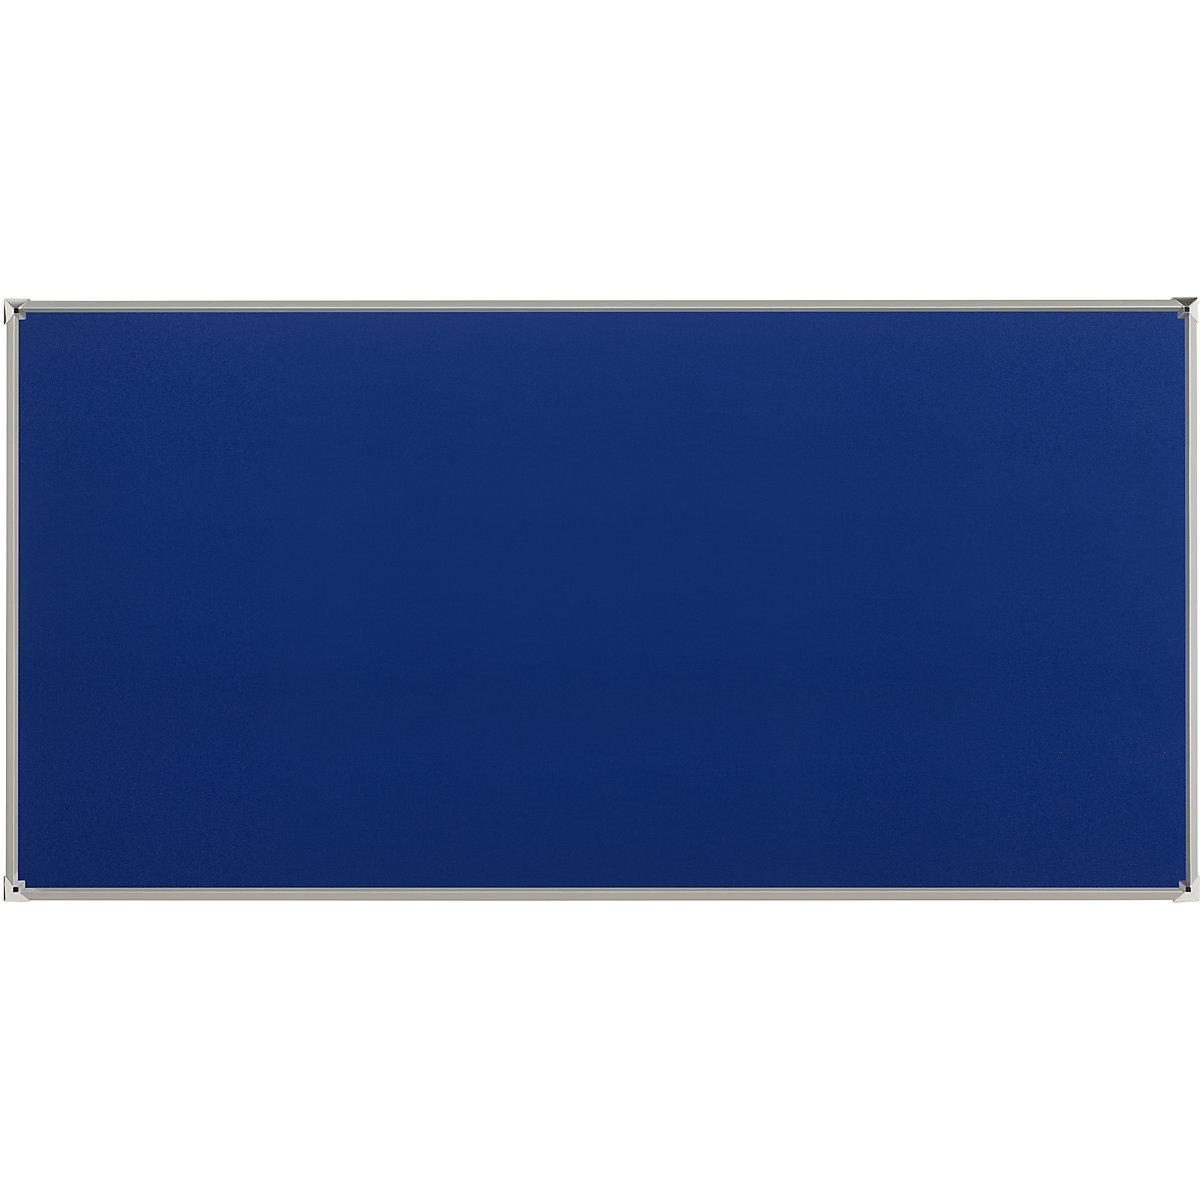 EUROKRAFTpro – Tablica do przypinania z ramą aluminiową, obicie z materiału, niebieskie, szer. x wys. 2400 x 1200 mm